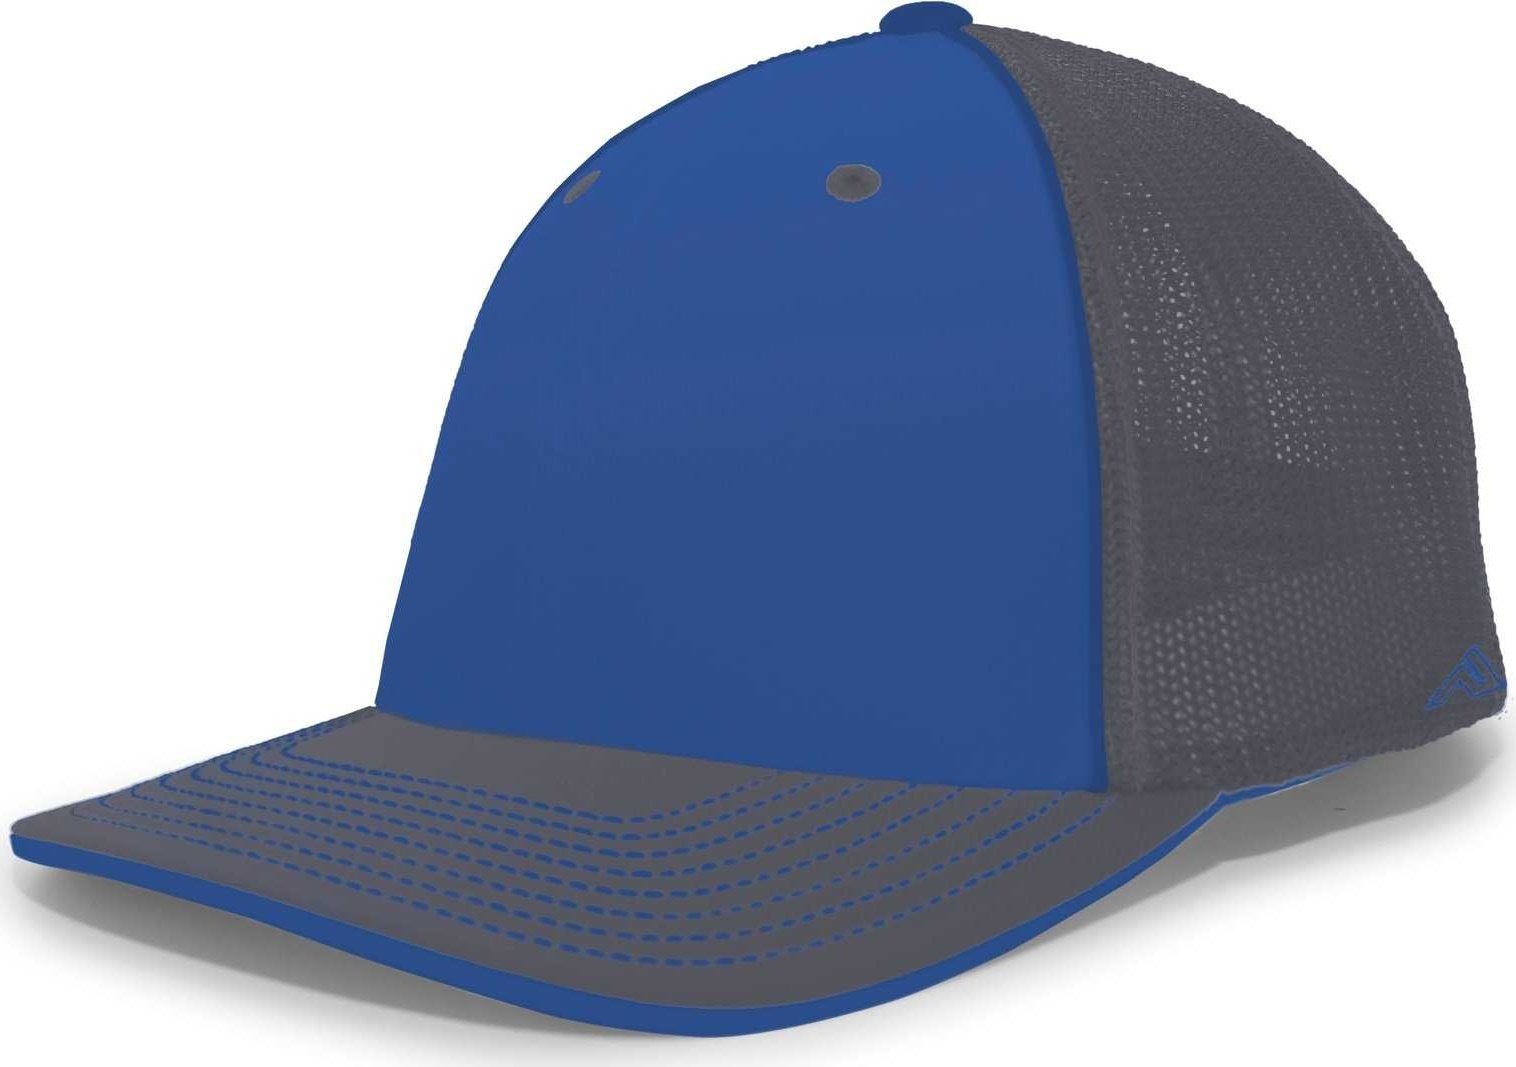 Pacific Headwear 404M Trucker Flexfit Cap - Royal Graphite - HIT a Double